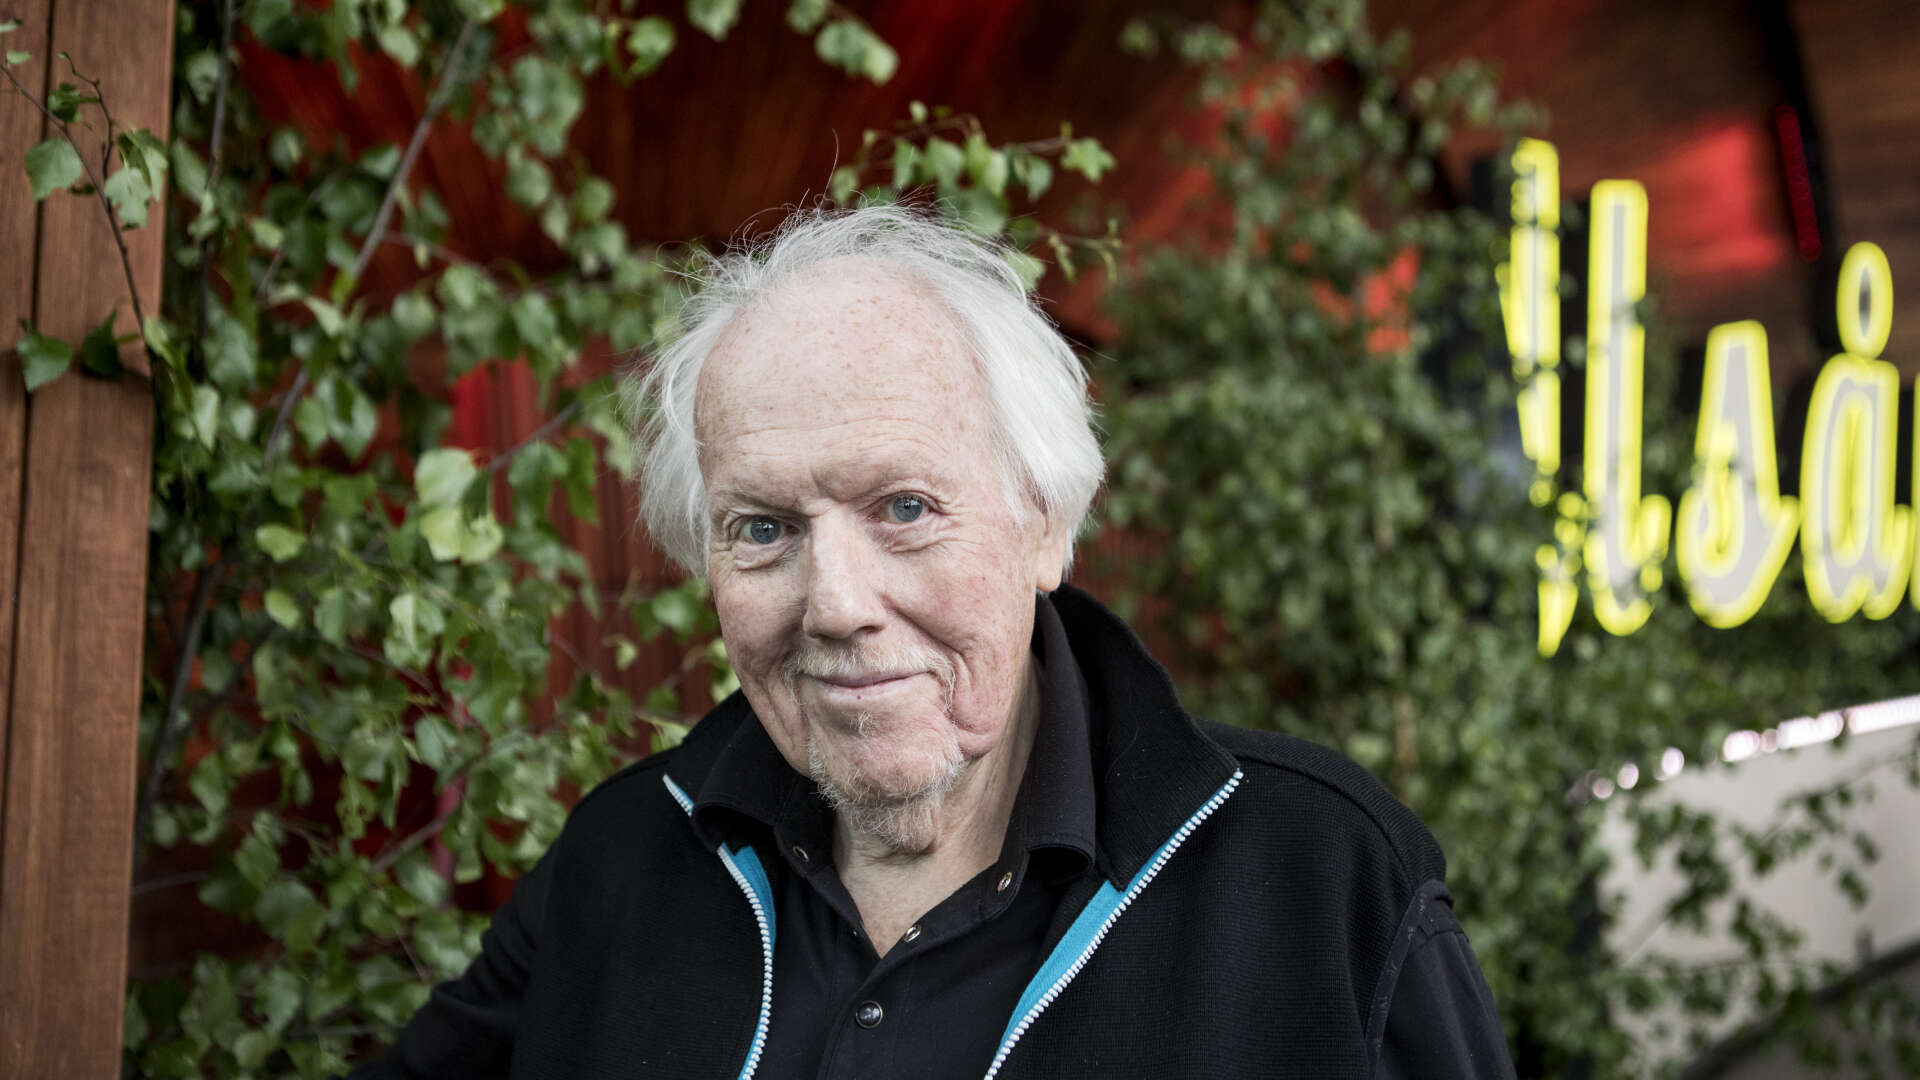 Artisten Svante Thuresson har avlidit efter en längre tids sjukdom. Han blev 84 år, rapporterar <a href="https://sverigesradio.se/artikel/svante-thuresson-ar-dod-blev-84-ar" id="link-mlAzWMcNSh2gdmQd">Sverige Radio</a>.